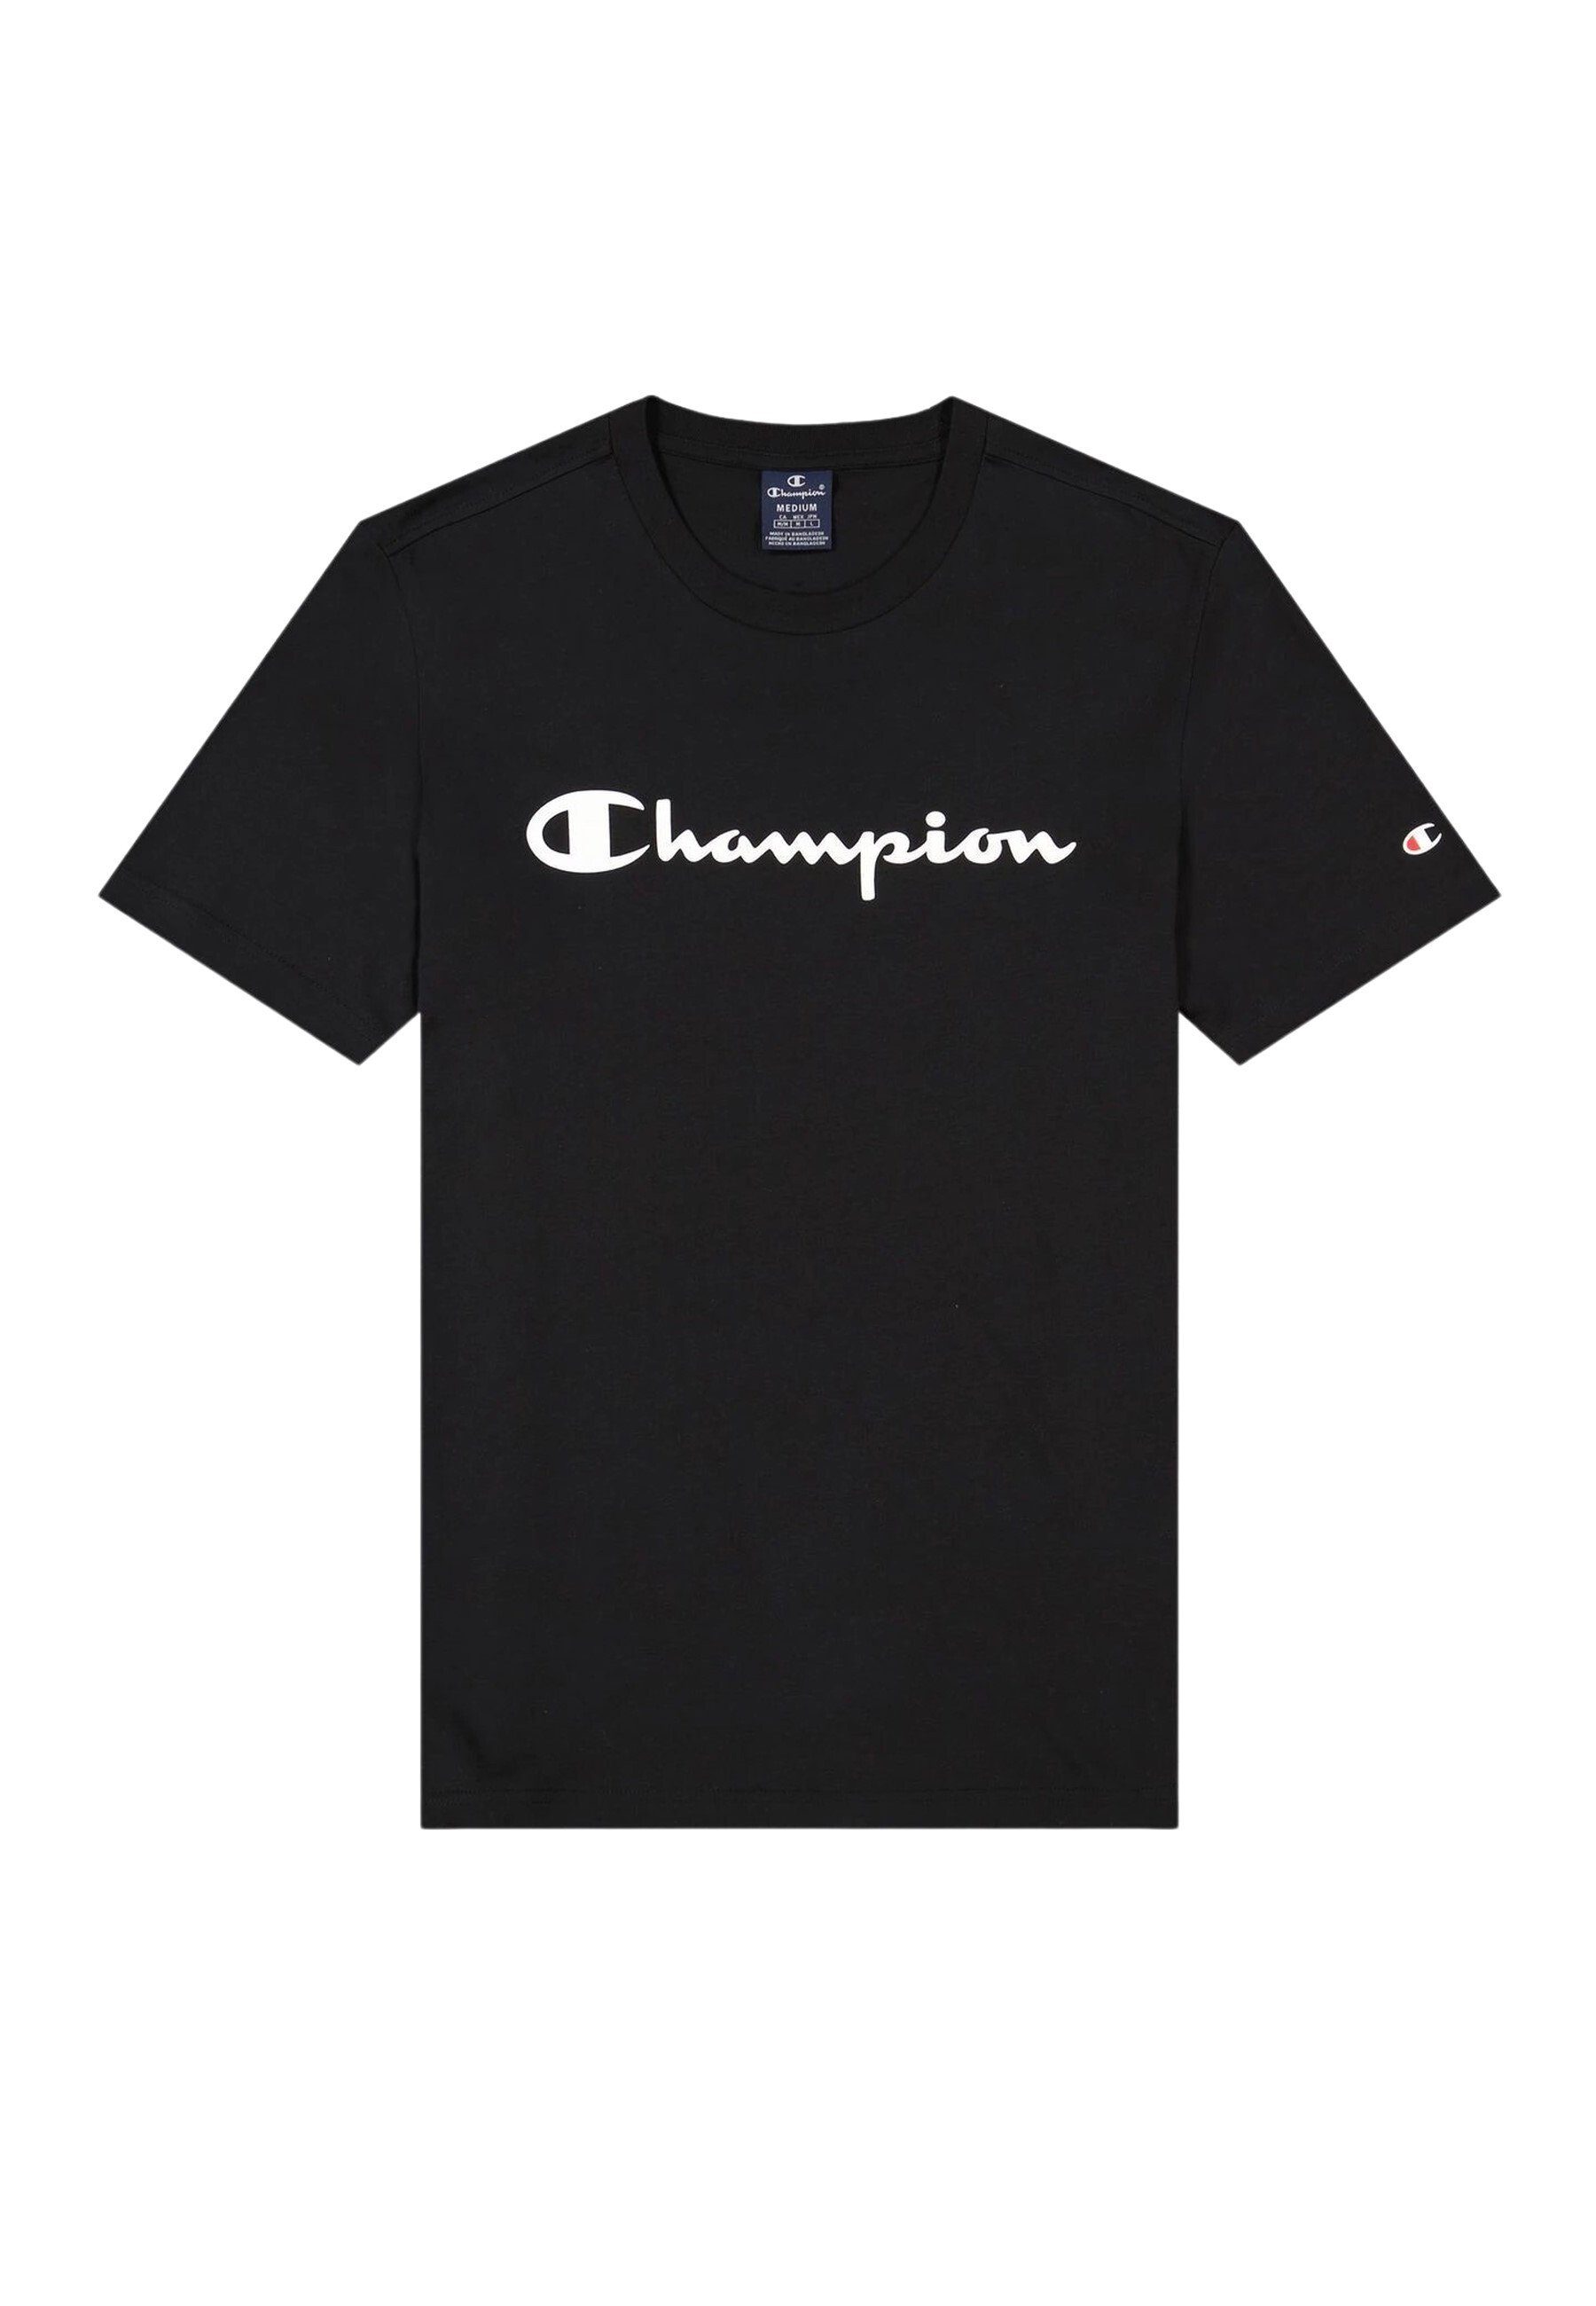 Champion T-Shirt Shirt Baumwoll-T-Shirt mit seitlichem Logoband und schwarz